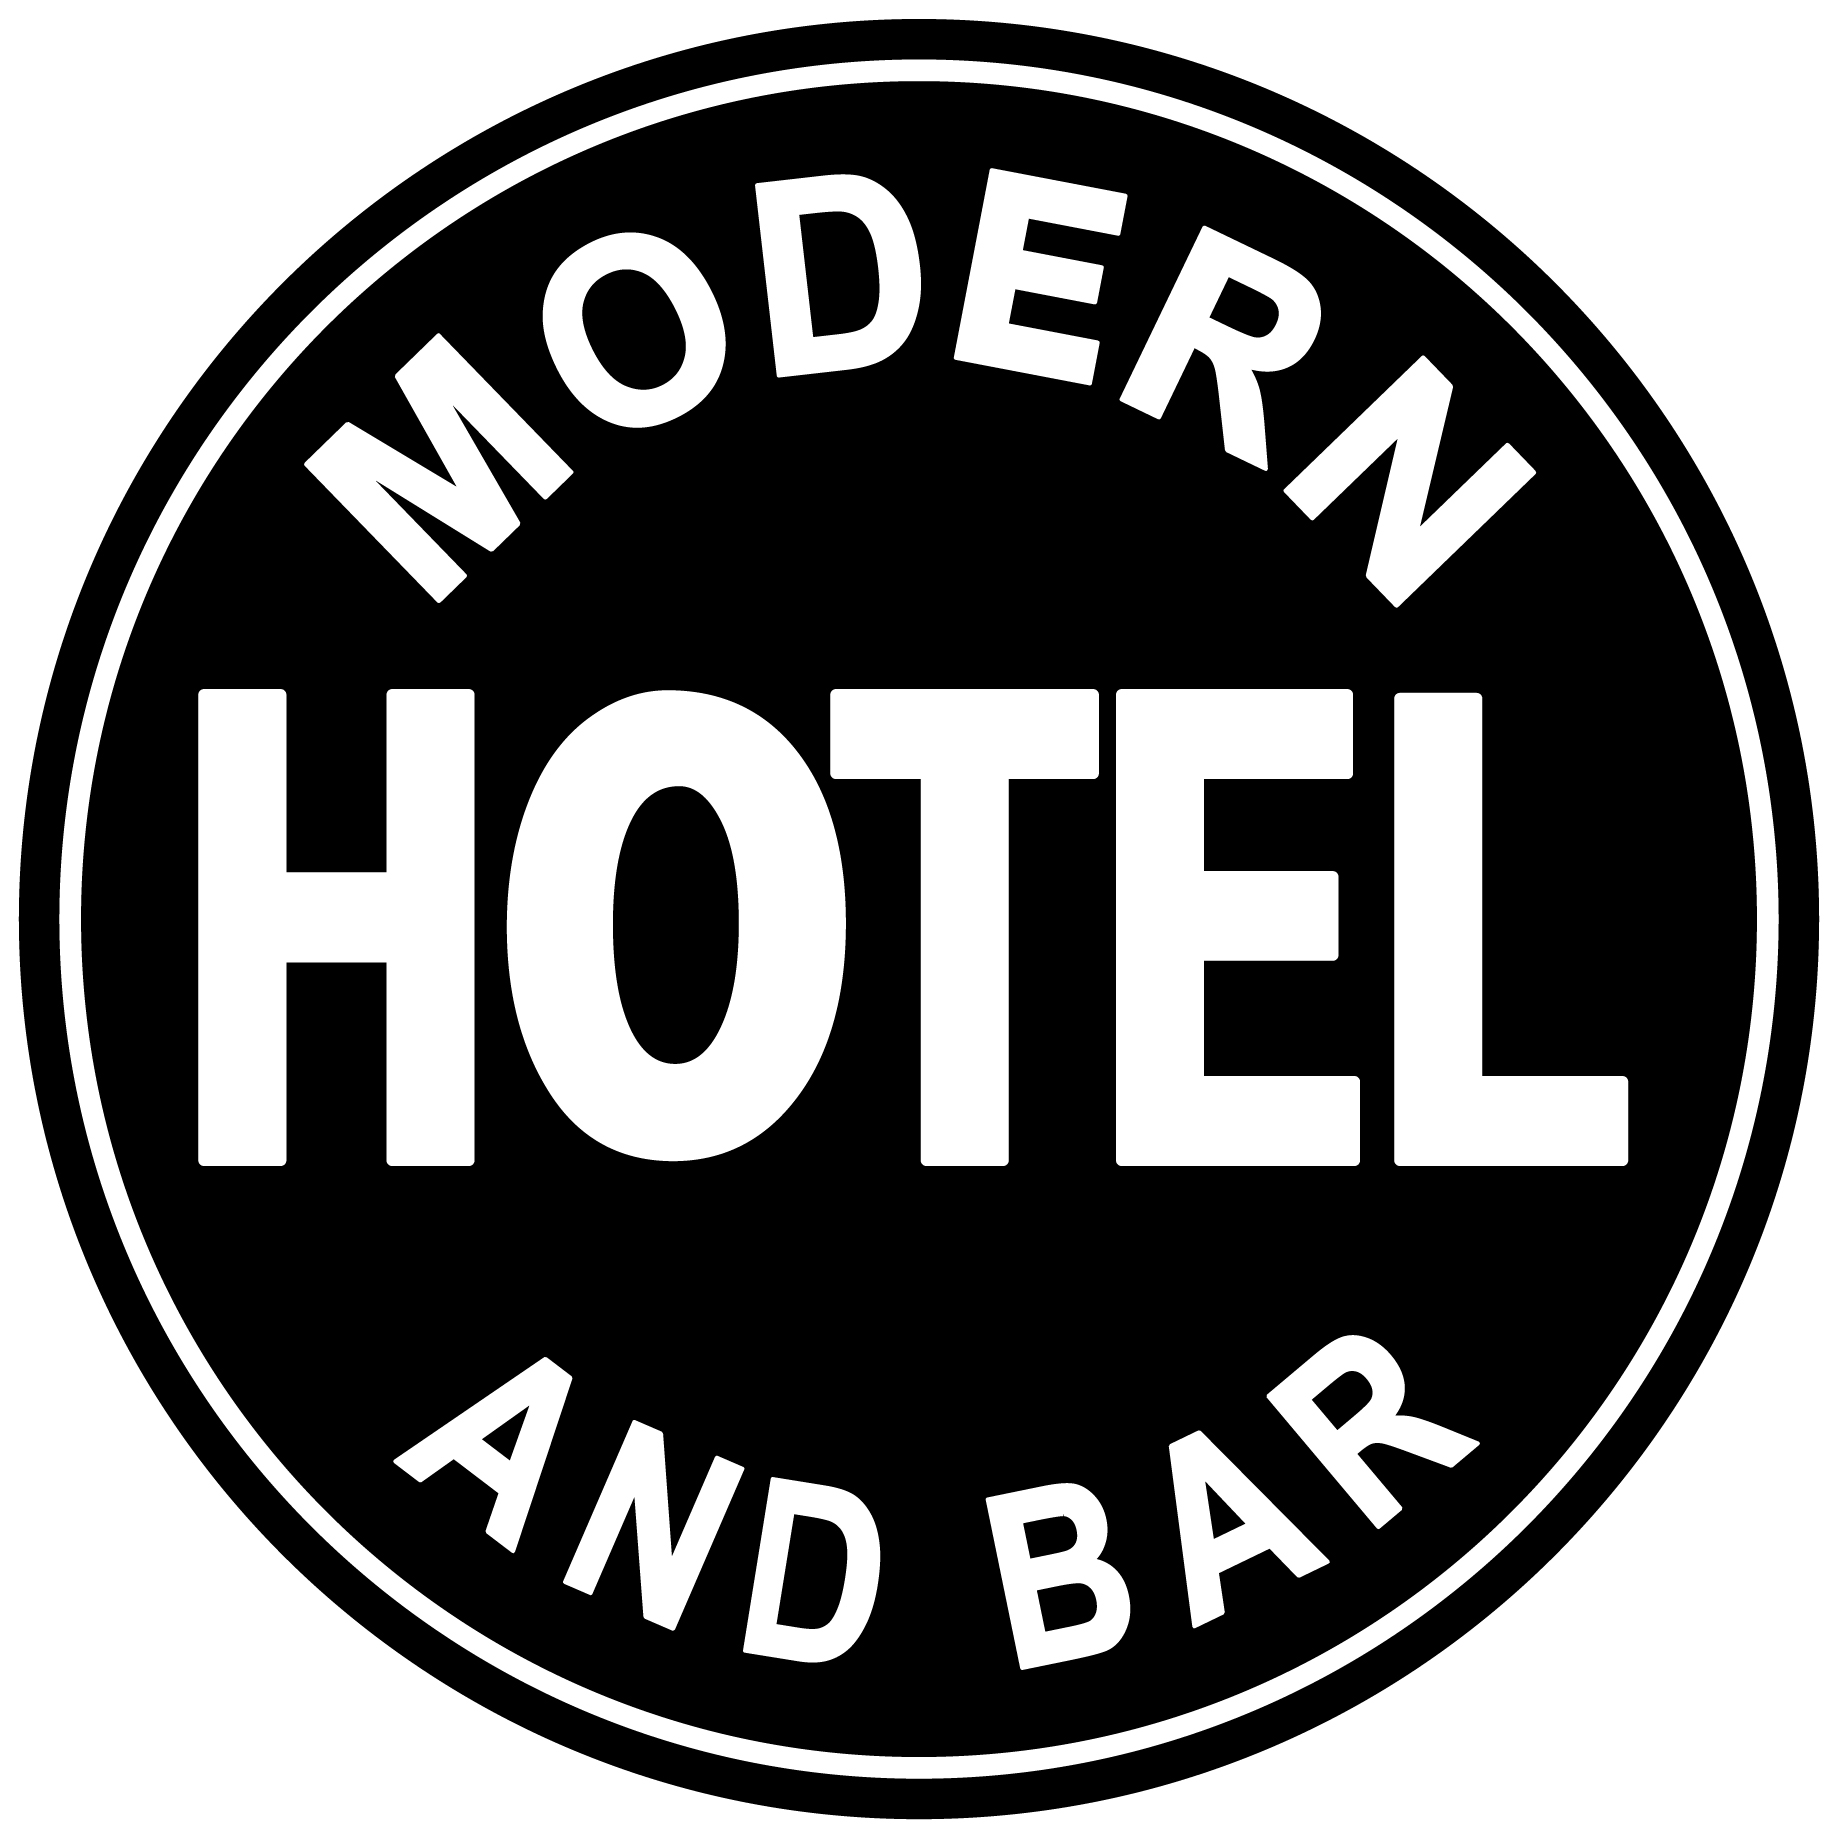 The Modern Hotel & Bar